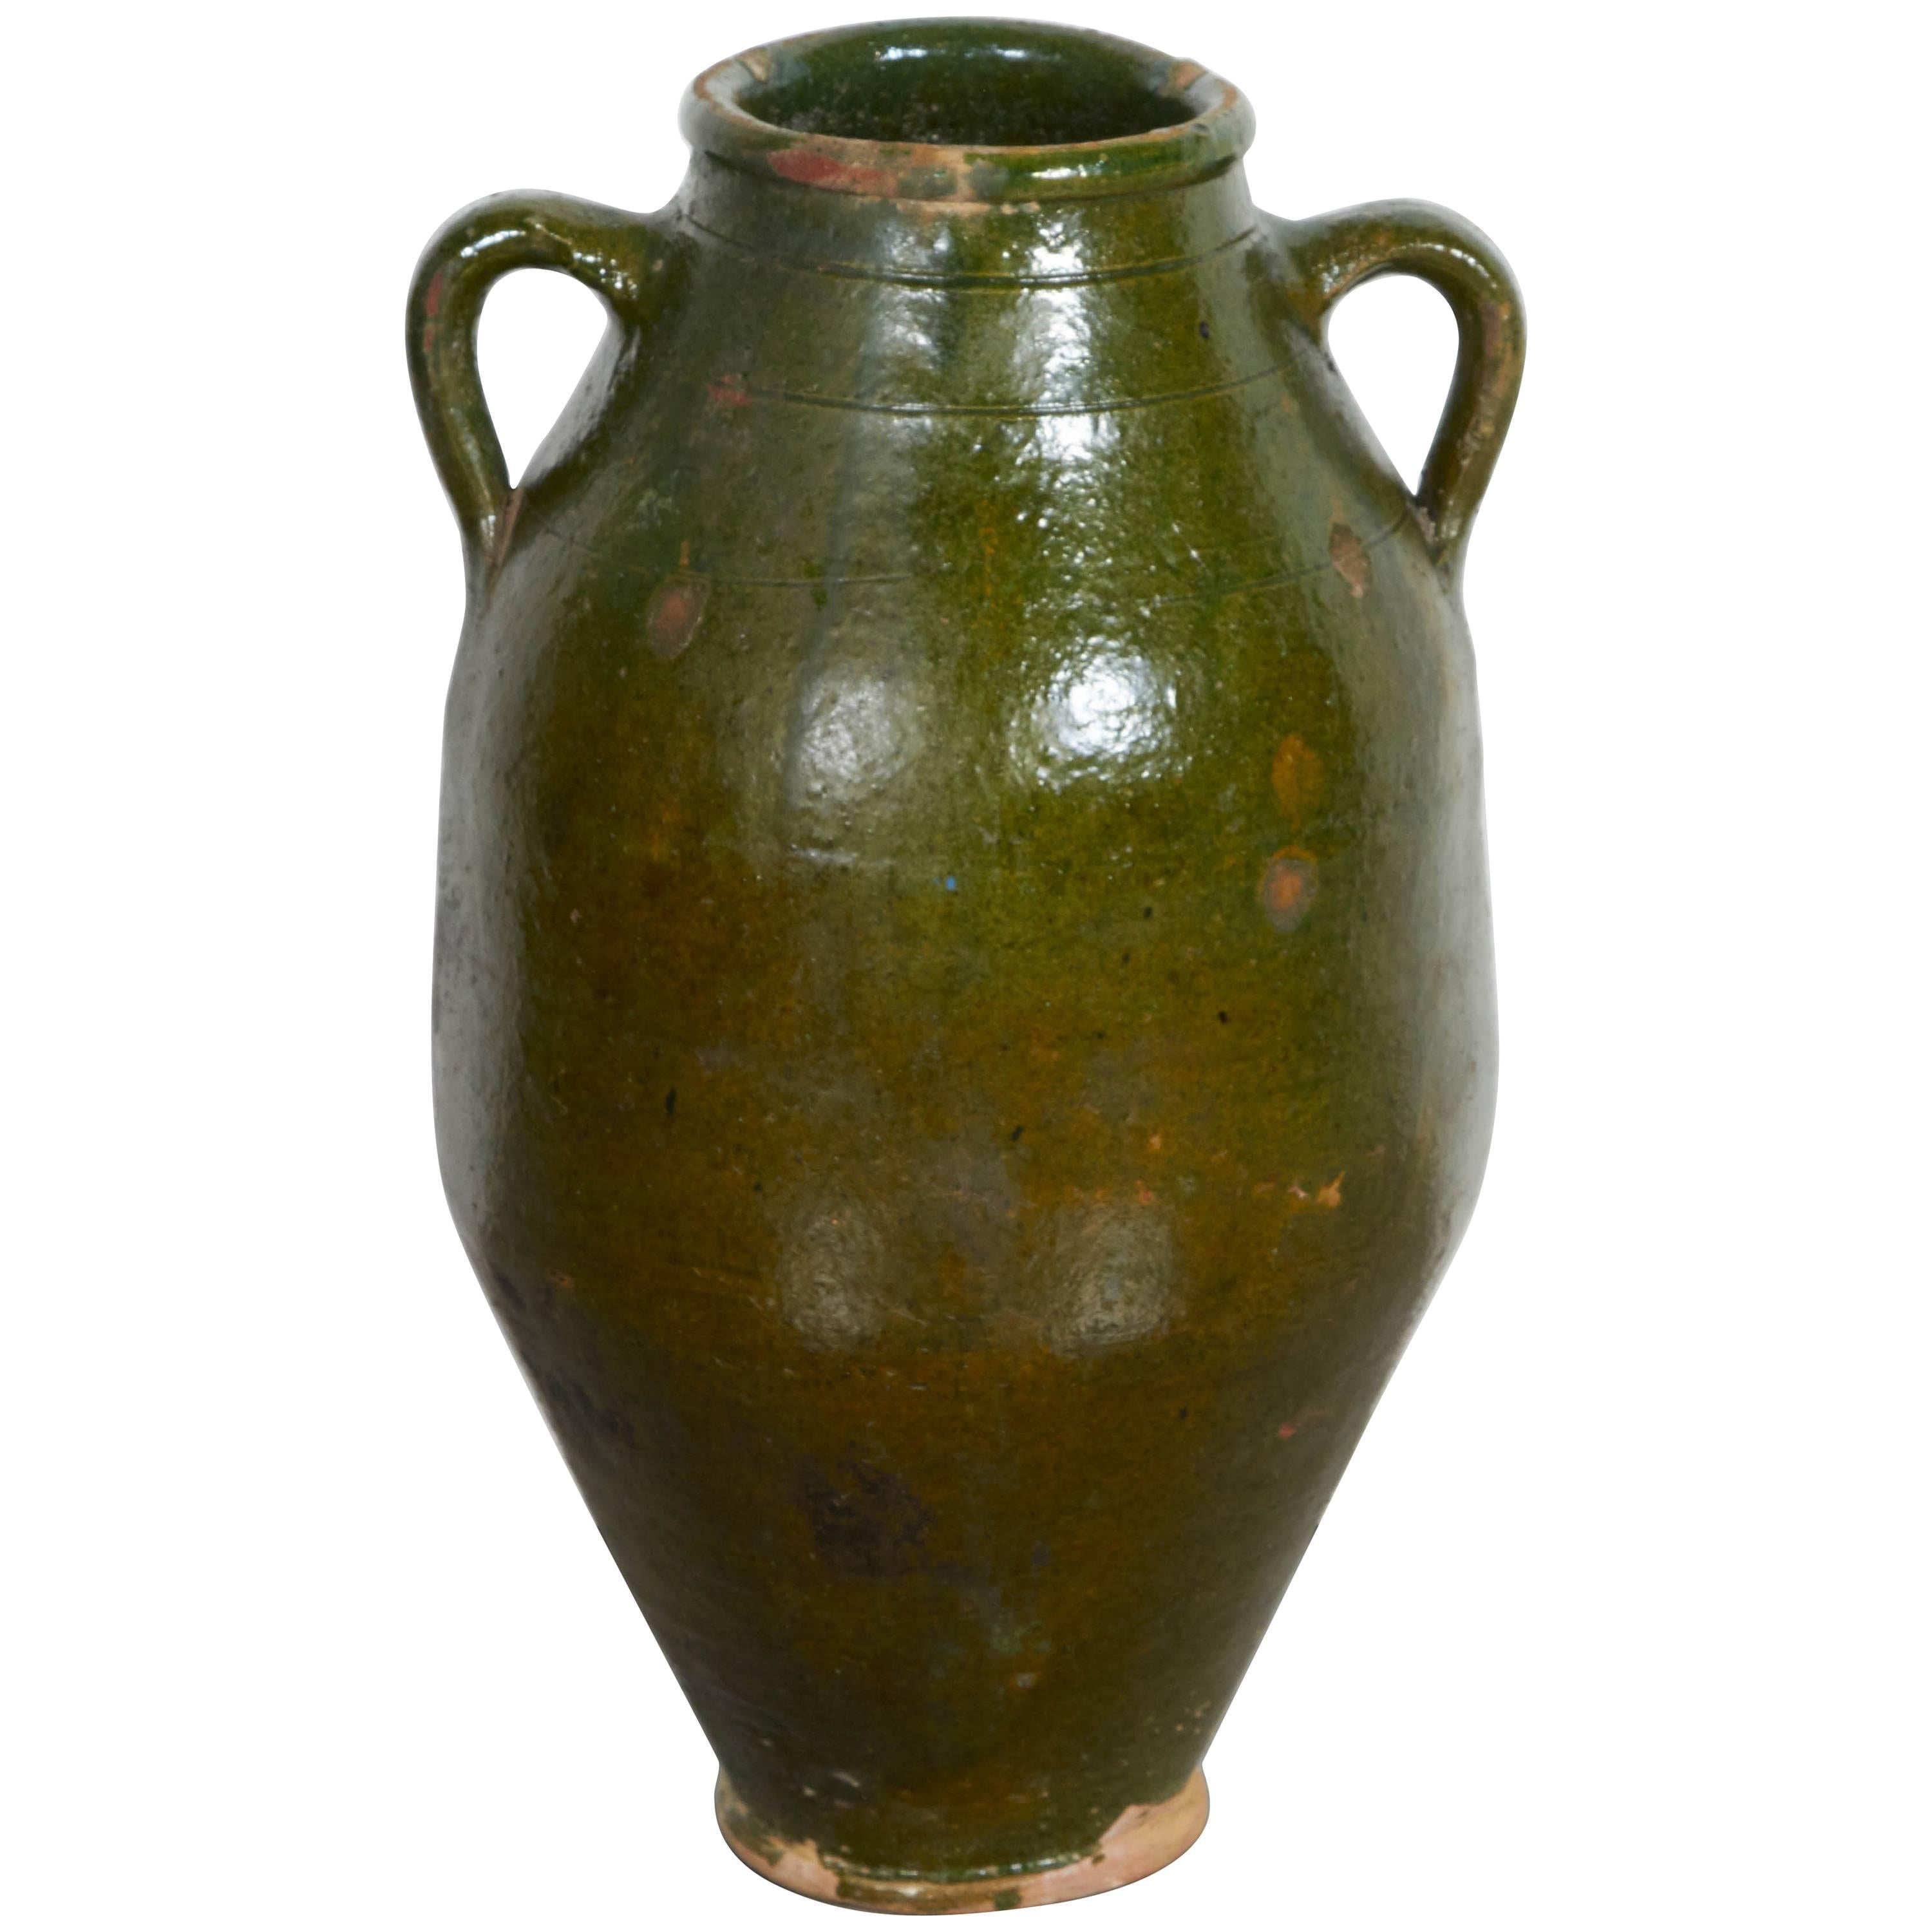 Nicely Glazed, Gracefully Shaped Antique Mediterranean Olive Jar